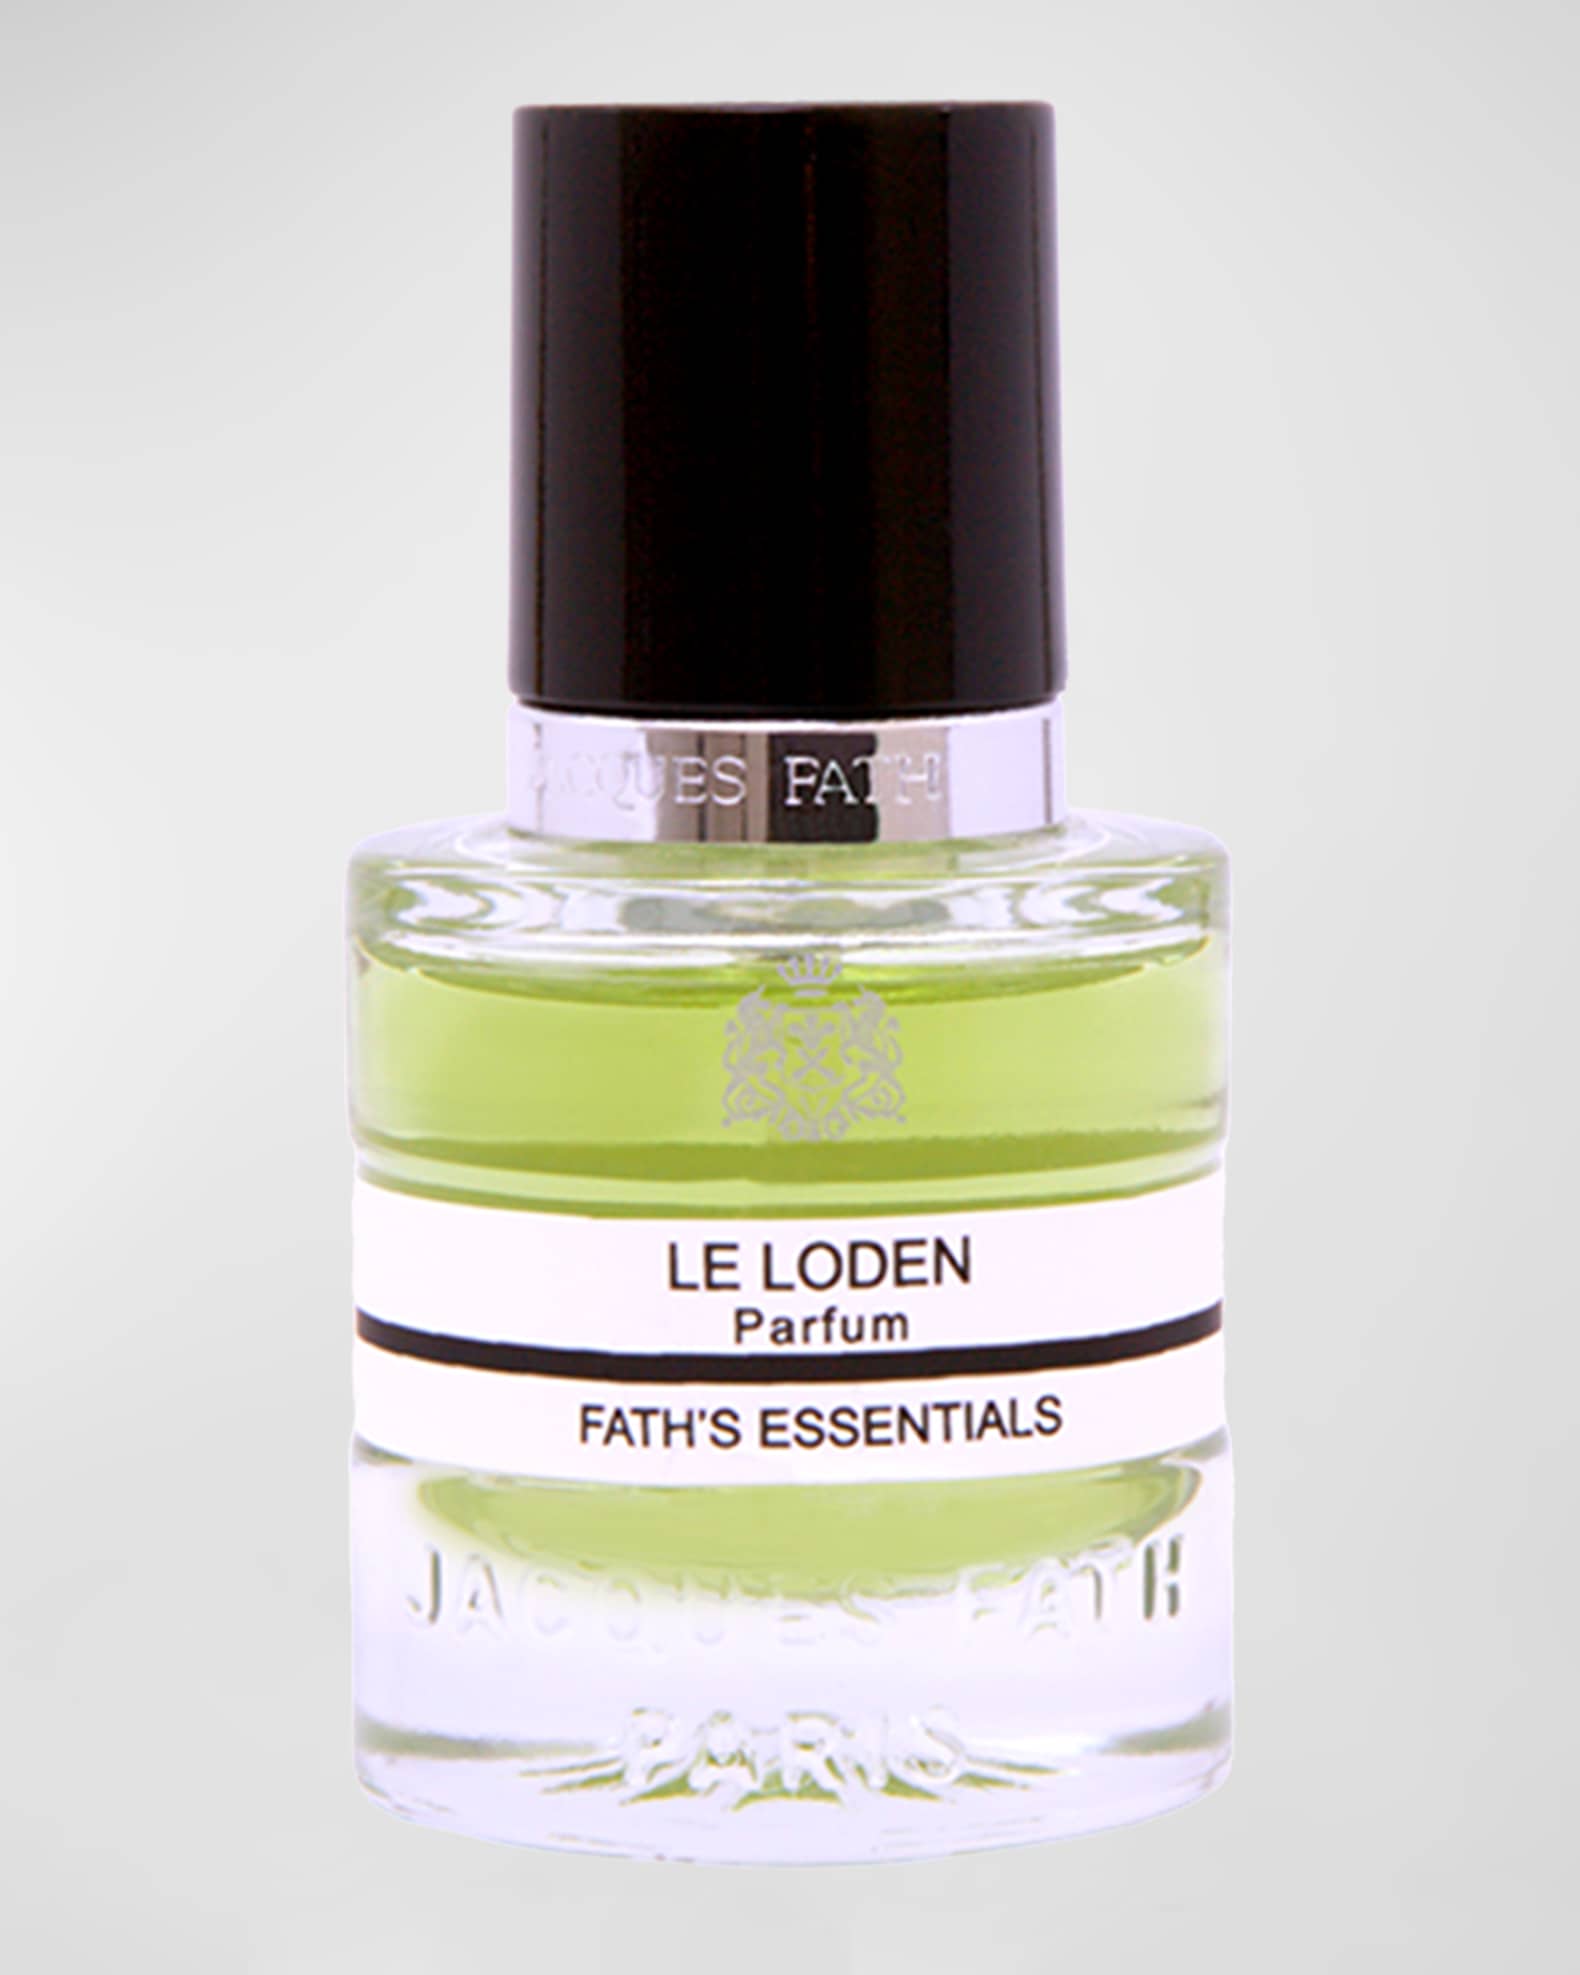 IRIS DE FATH - L'EXTRAIT DE PARFUM, Jacques Fath Parfums